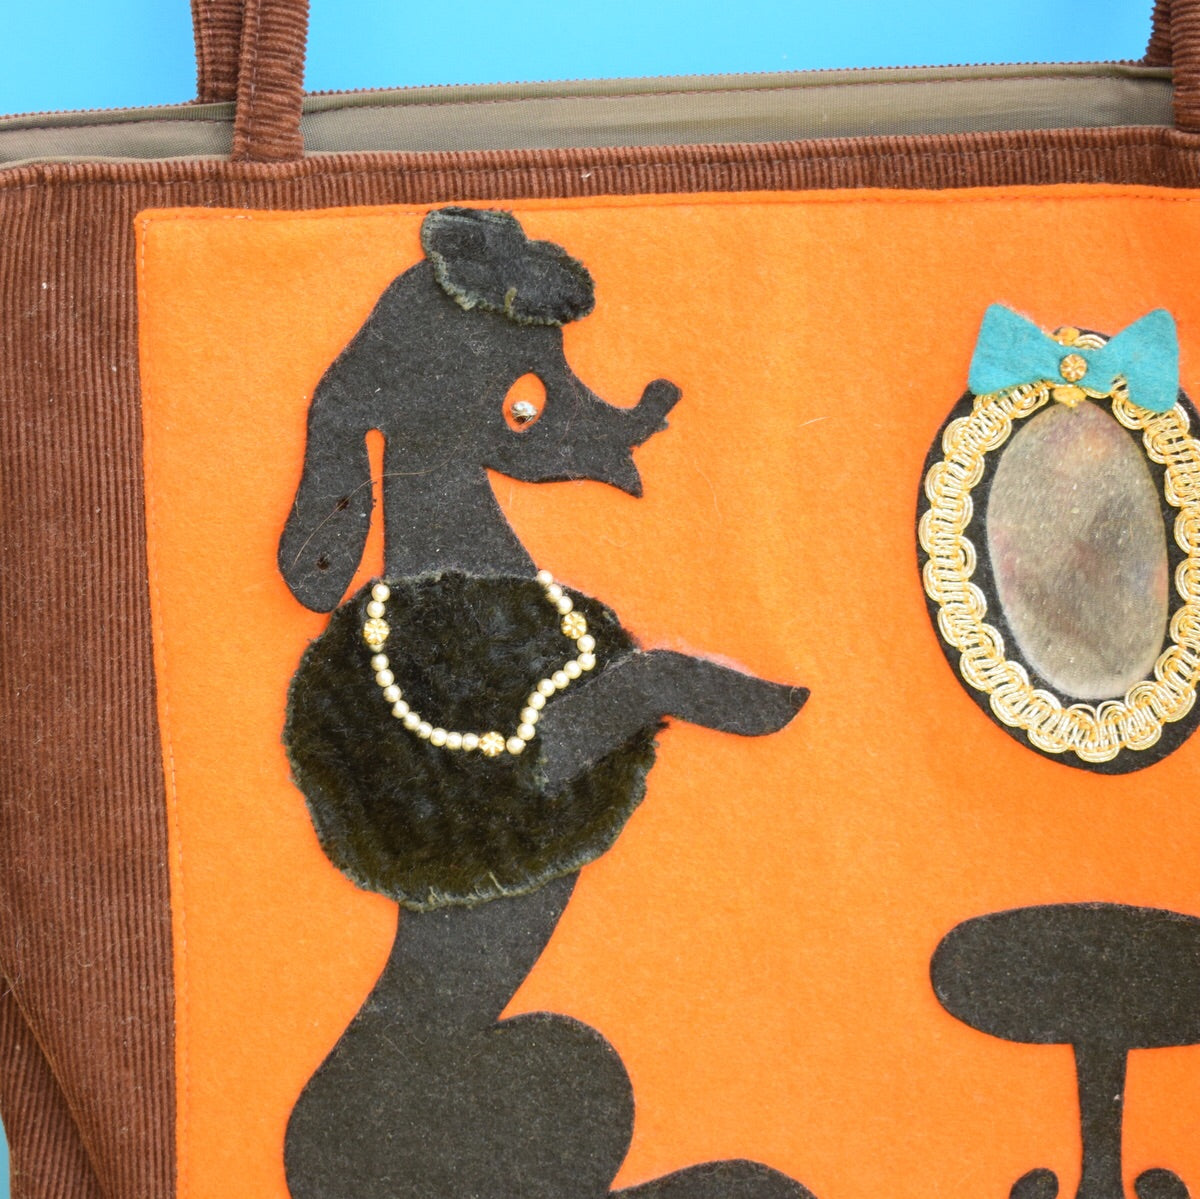 Vintage 1950s Poodle Felt & Cord Hand Bag - Brown & Orange